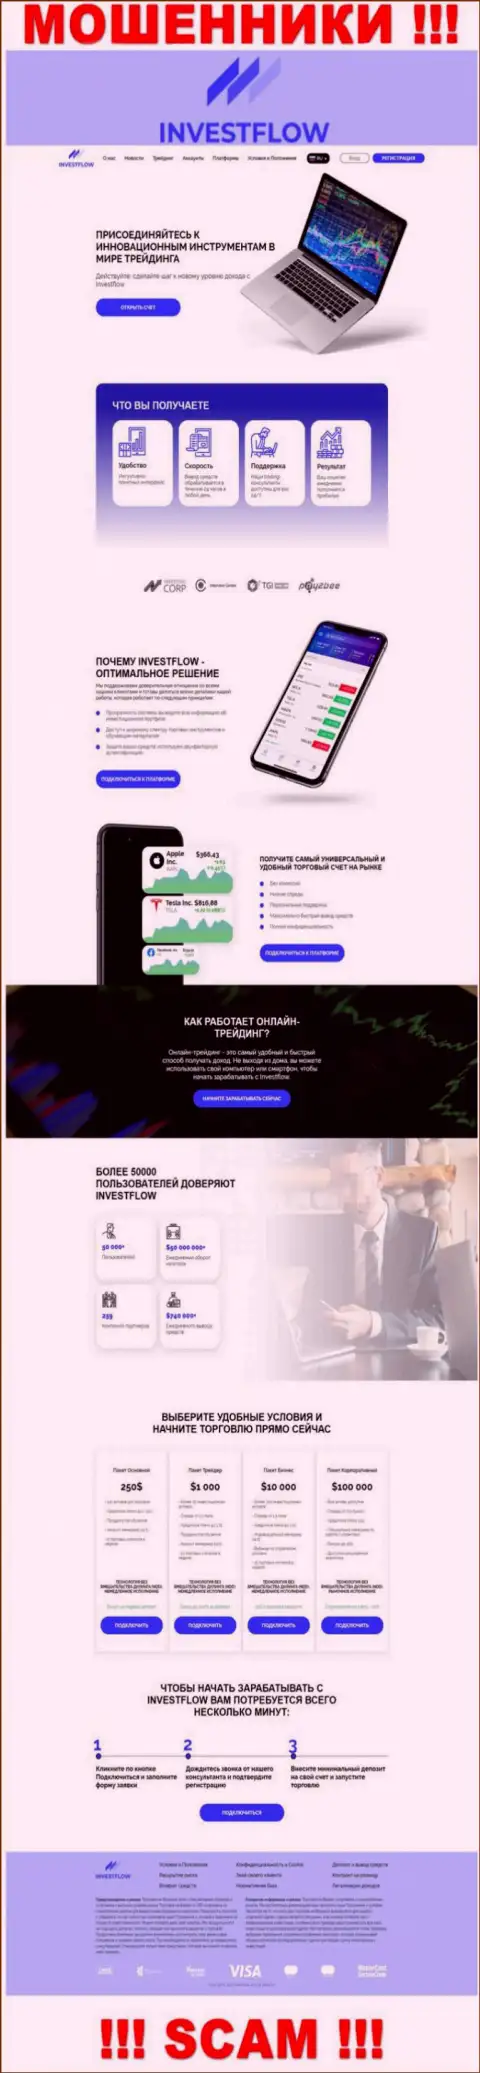 Скрин официального веб-сервиса InvestFlow - Invest-Flow Io